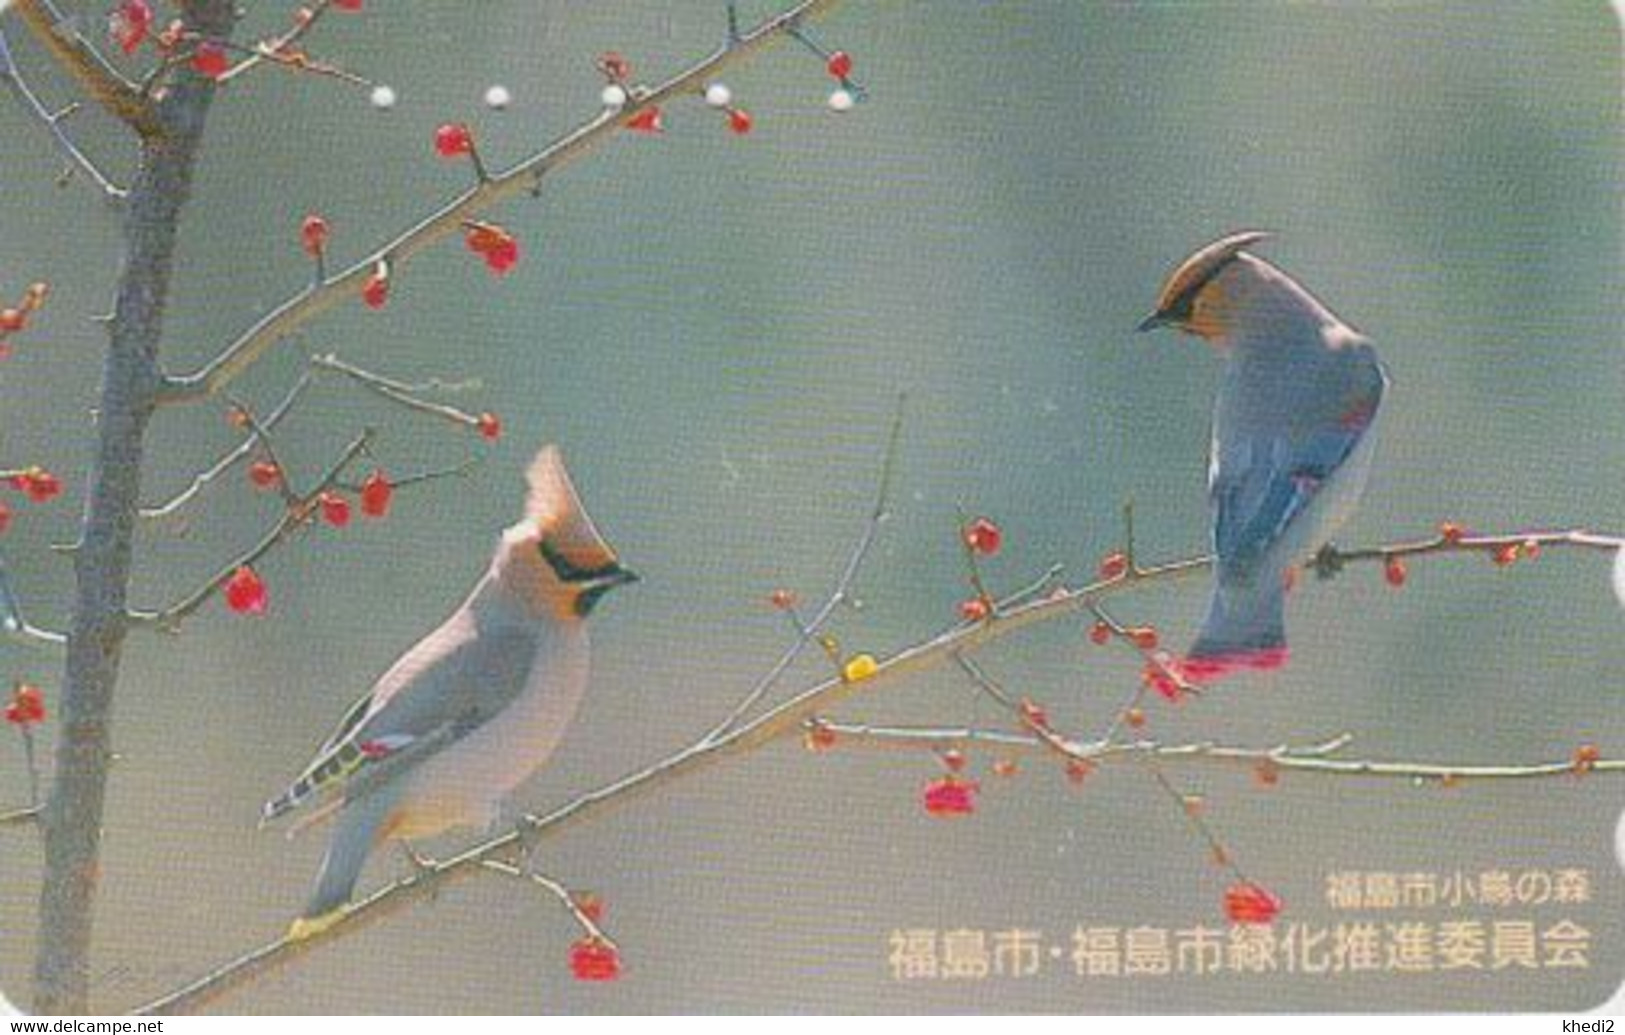 RARE TC JAPON / 410-11339 - ANIMAL - OISEAU - JASEUR BOREAL - BIRD JAPAN Free Phonecard - 5673 - Sperlingsvögel & Singvögel